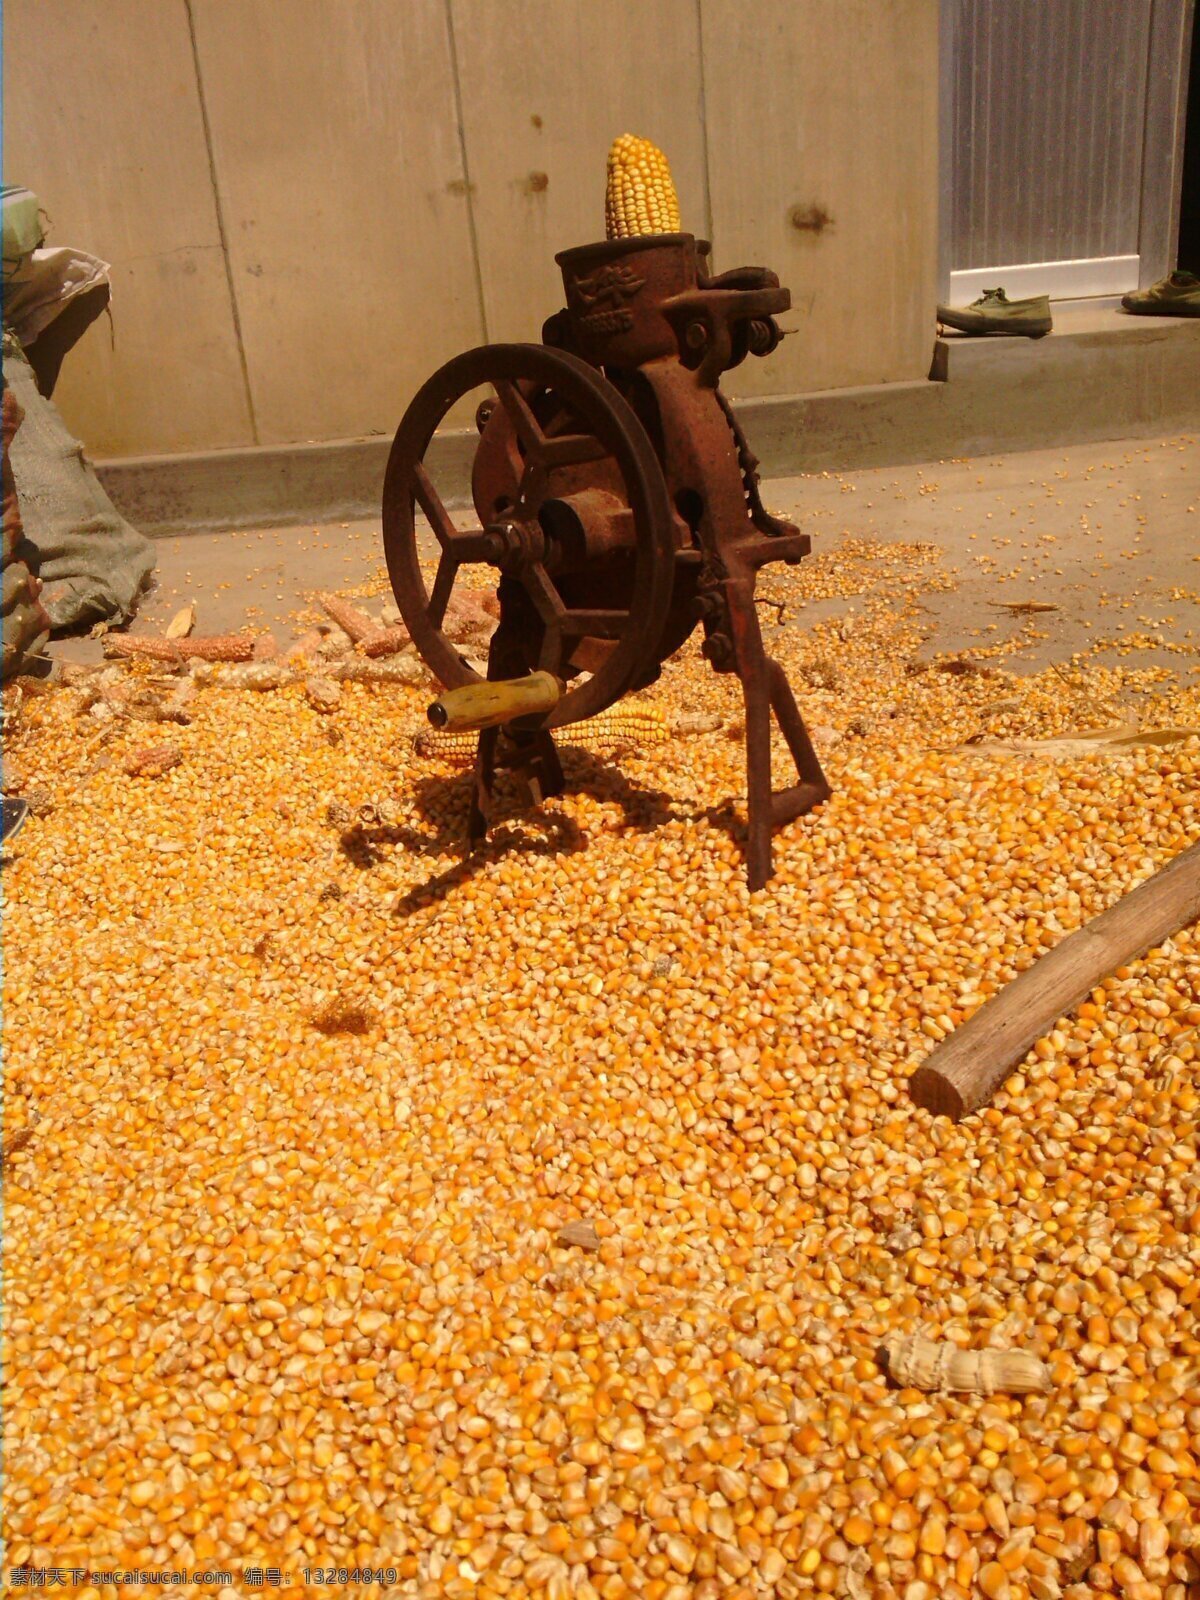 玉米 手摇 机 农村 现代科技 玉米手摇机 农村玉米 金色玉米 手摇机 农业生产 矢量图 日常生活